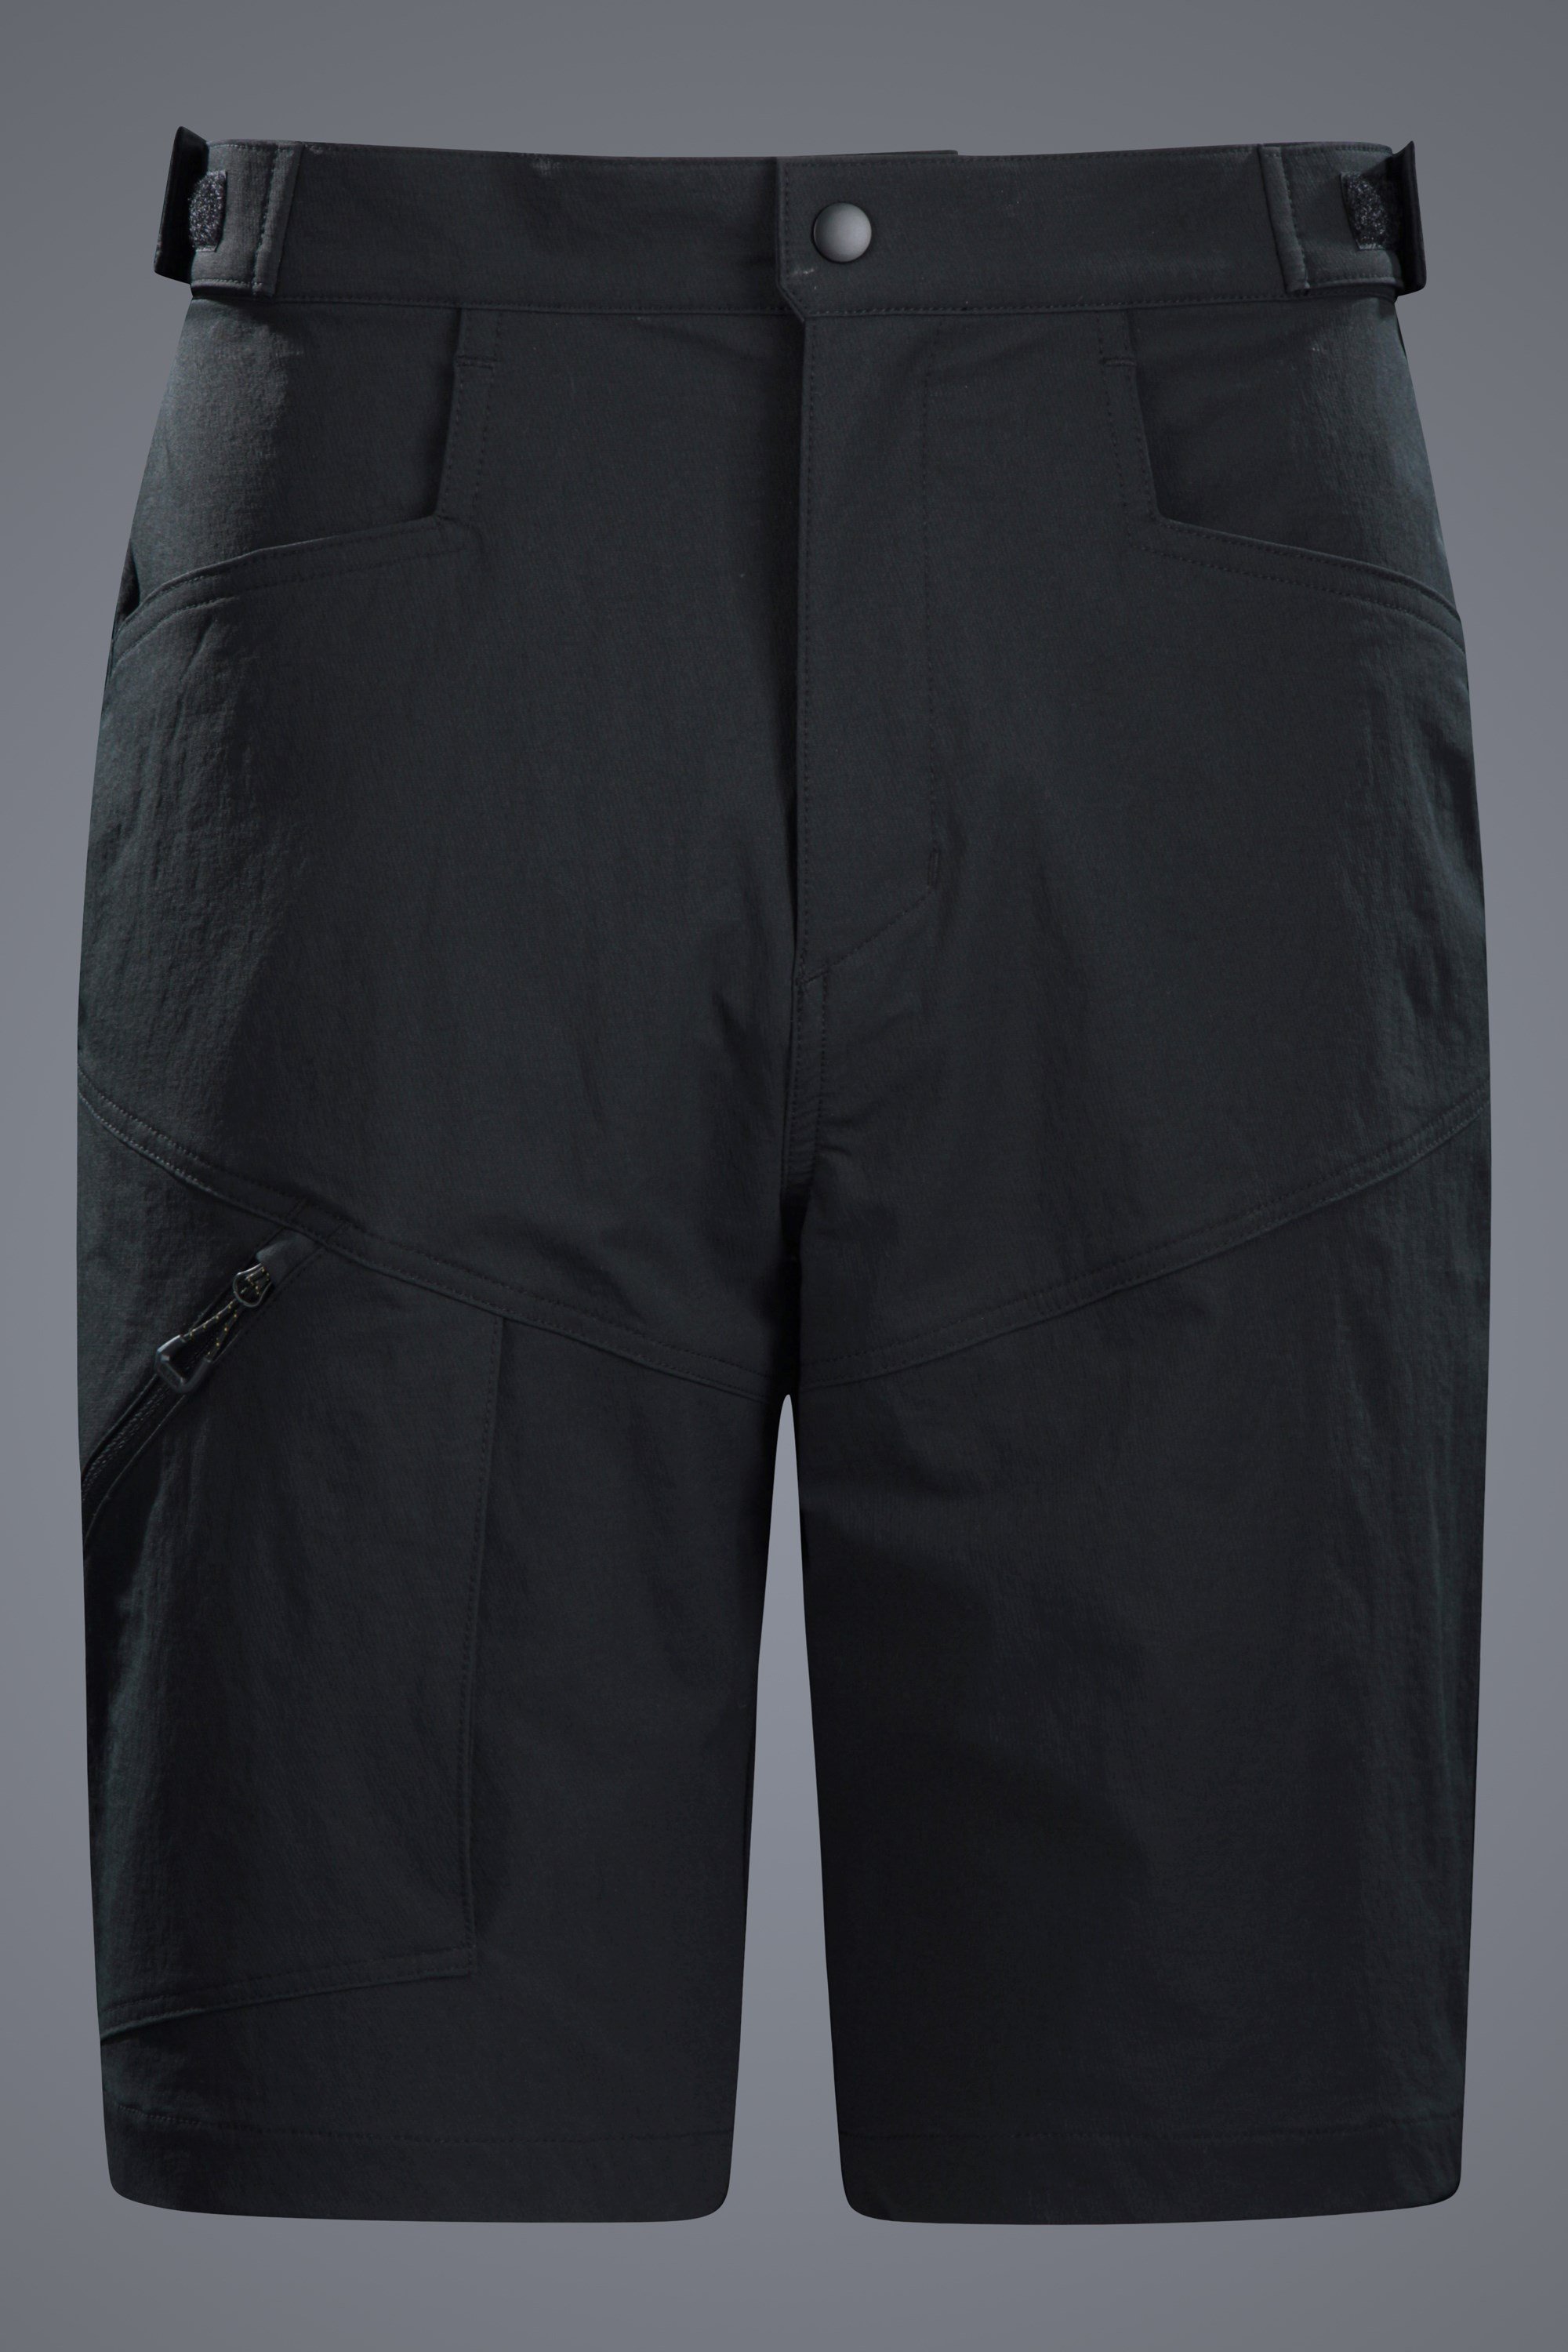 Ultra Balkan Mens Water-resistant Shorts - Black